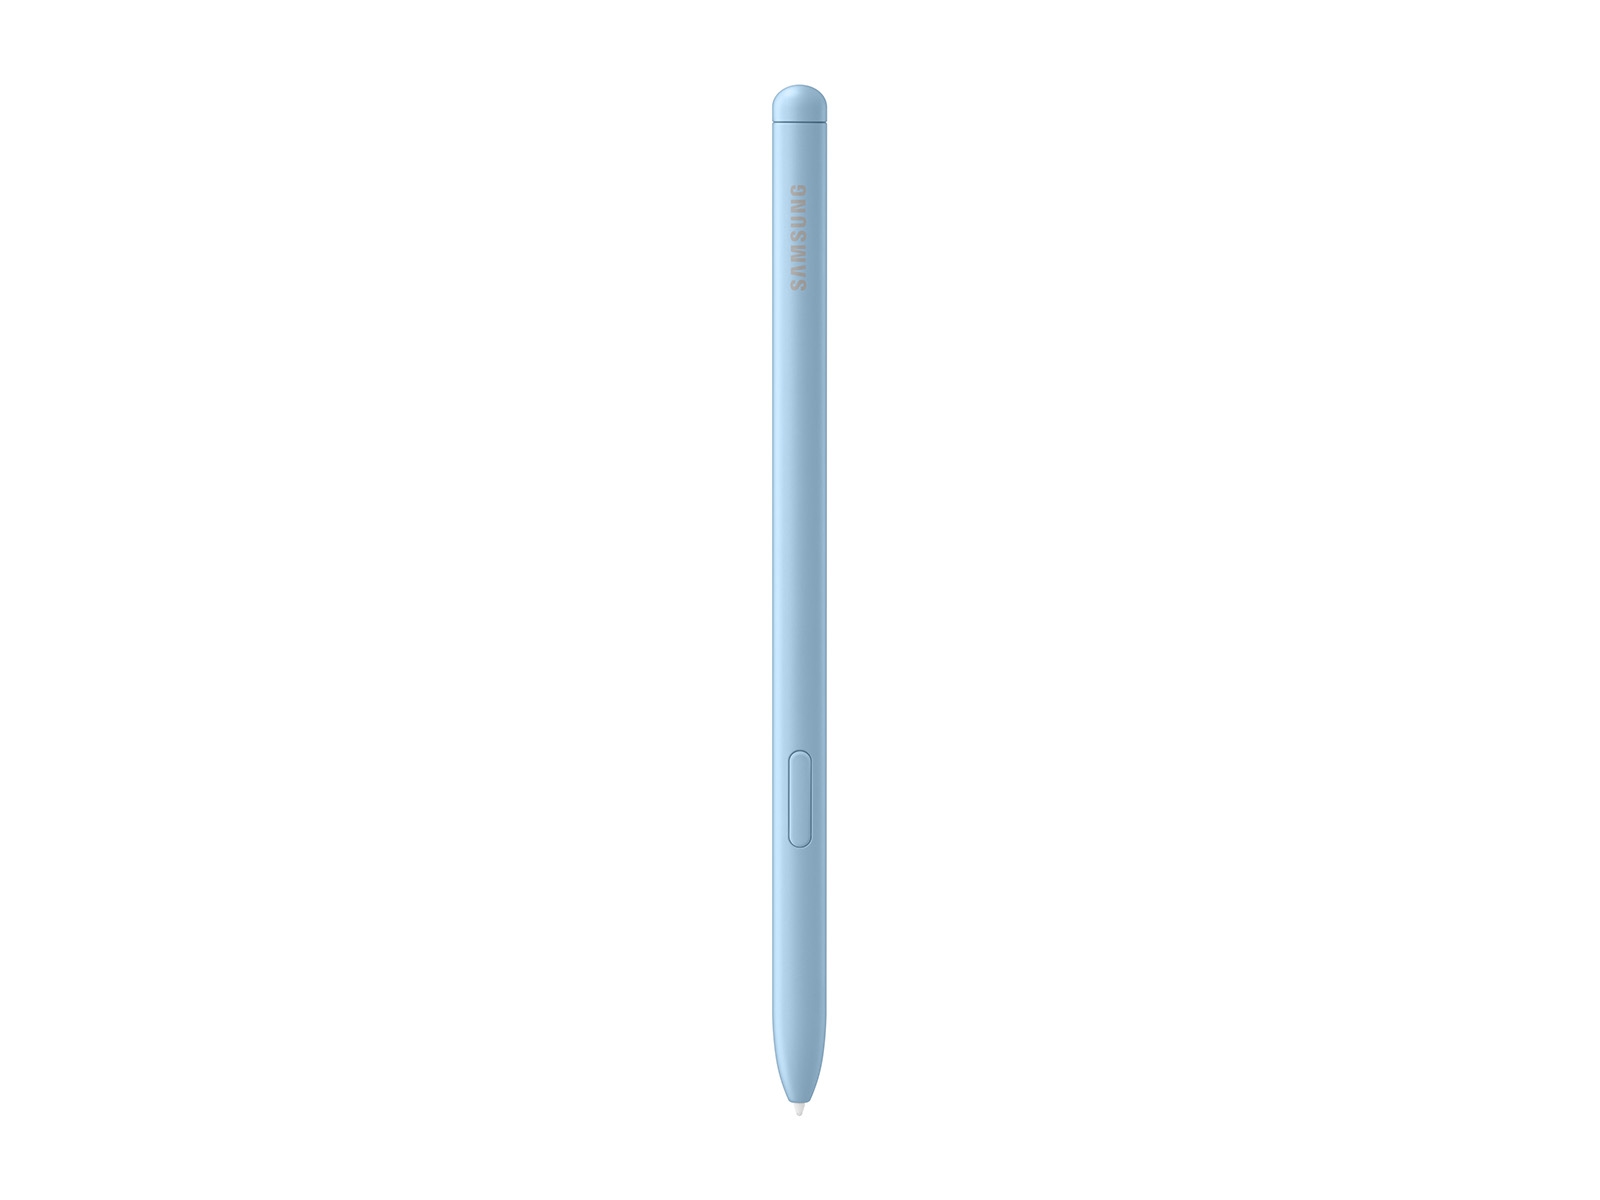 Tablet Samsung S6 lite 10.4'' 64GB WIFI 2022 Azul SM-P613